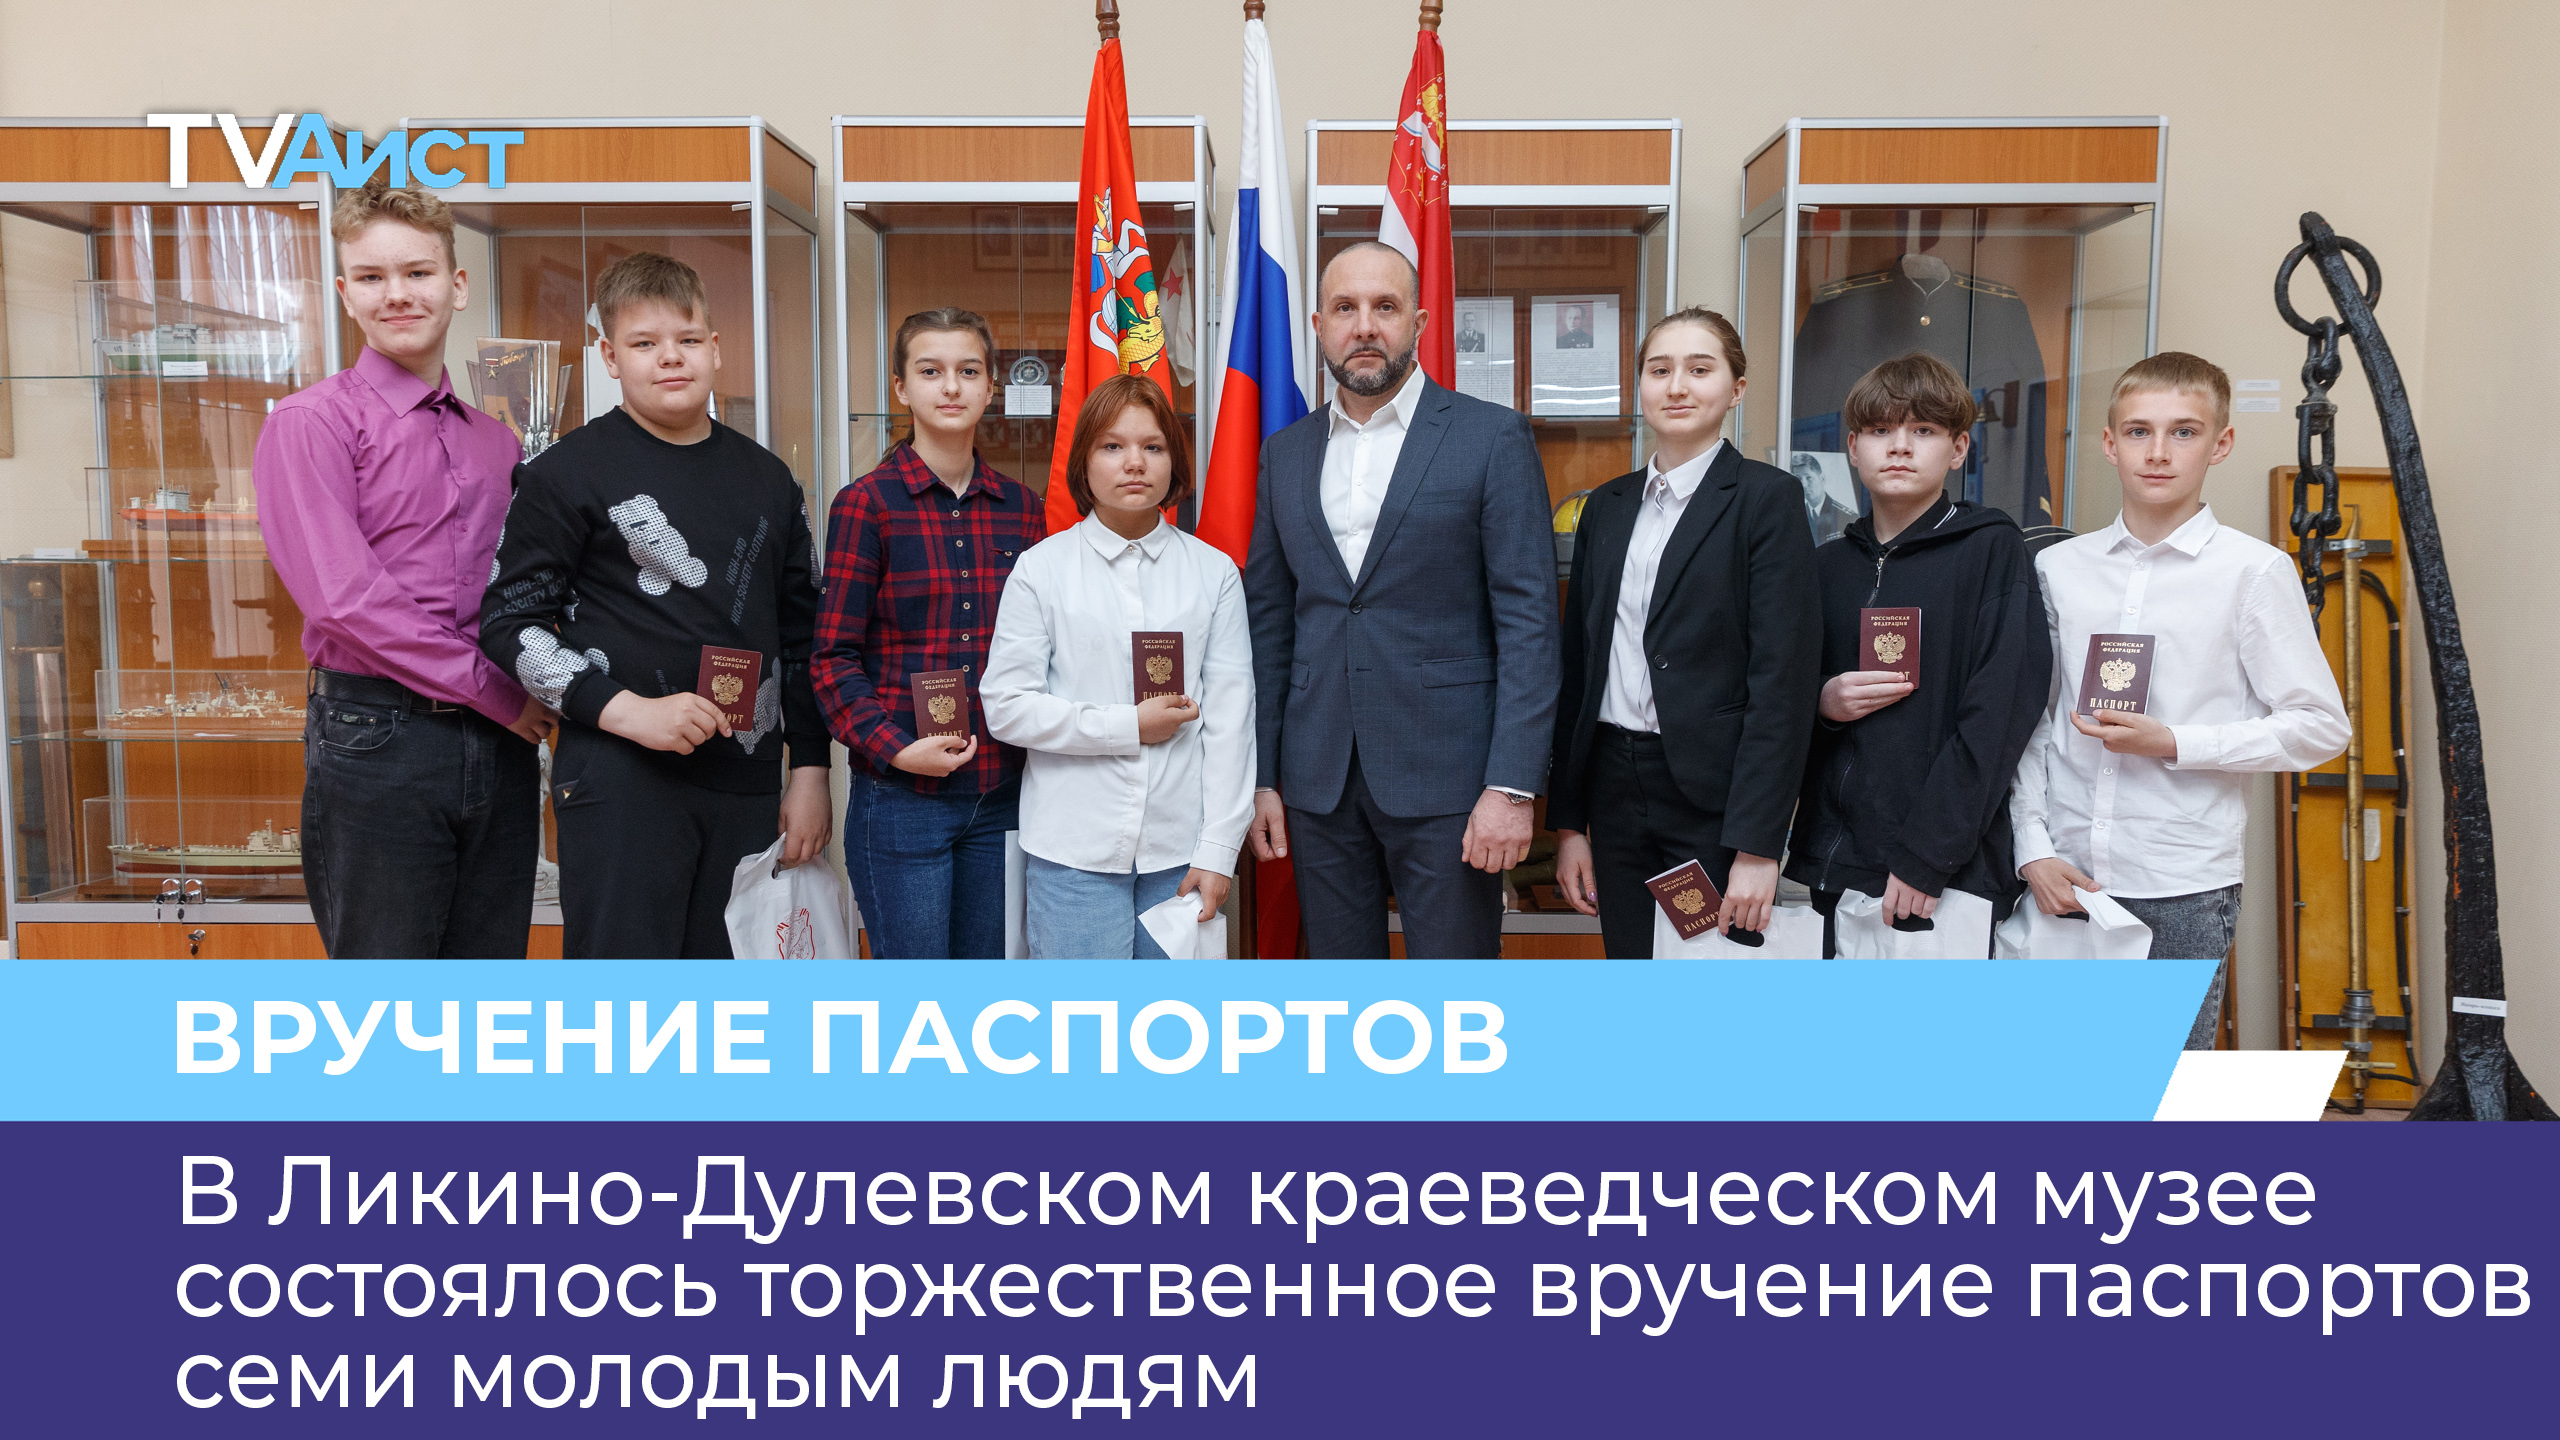 В Ликино-Дулёвском краеведческом музее состоялось торжественное вручение паспортов 7 молодым людям